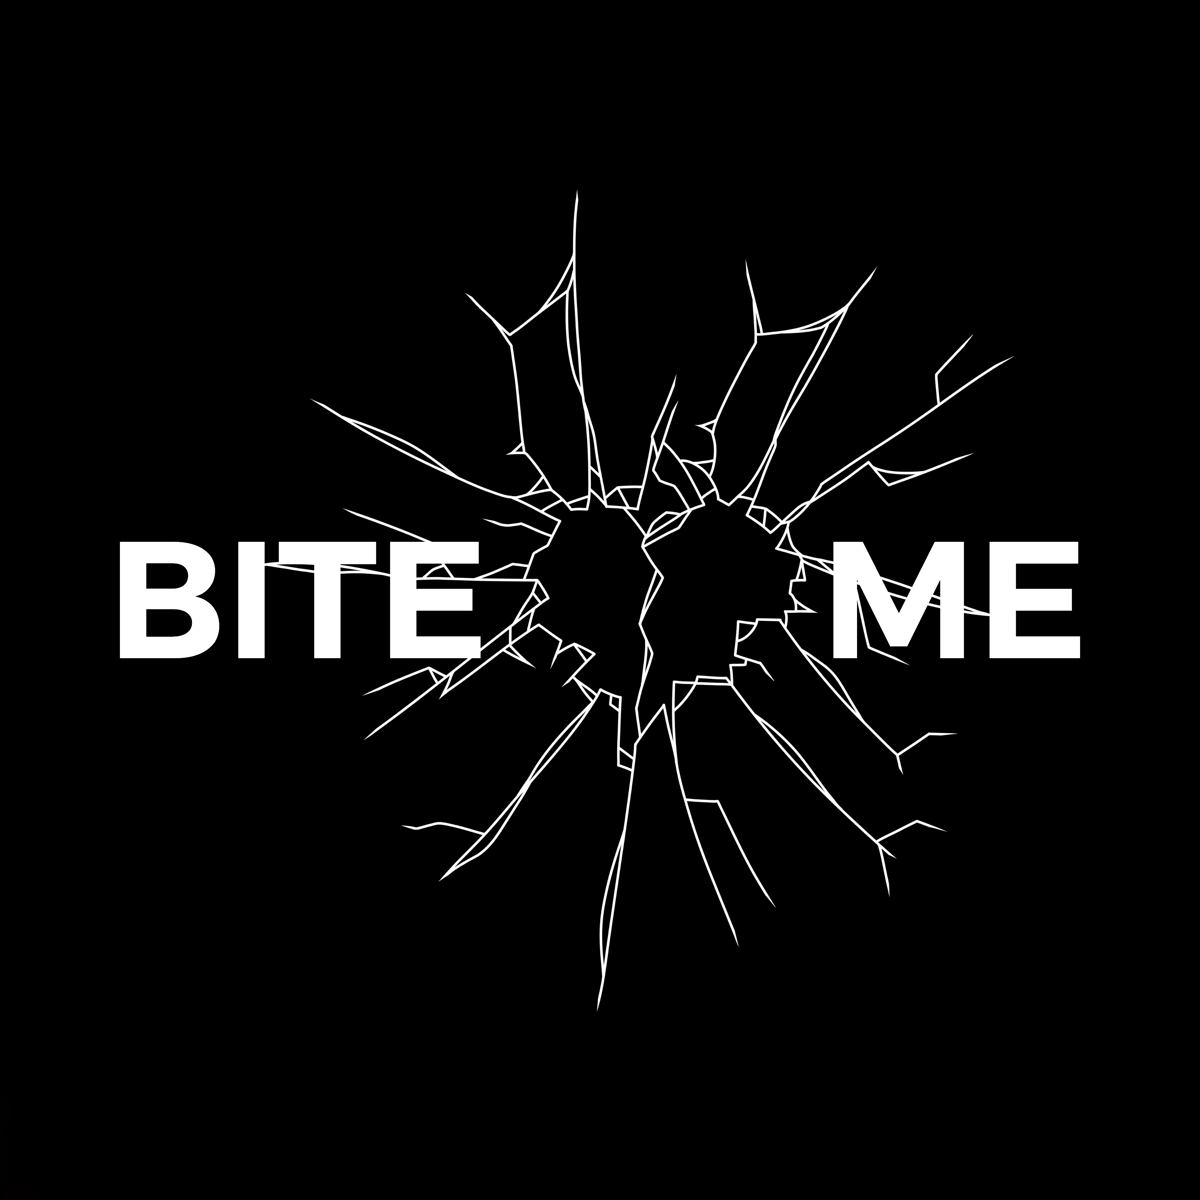 Ibit. Bite me. Обложка bite me unhappy. Обложка bite me enhapen.